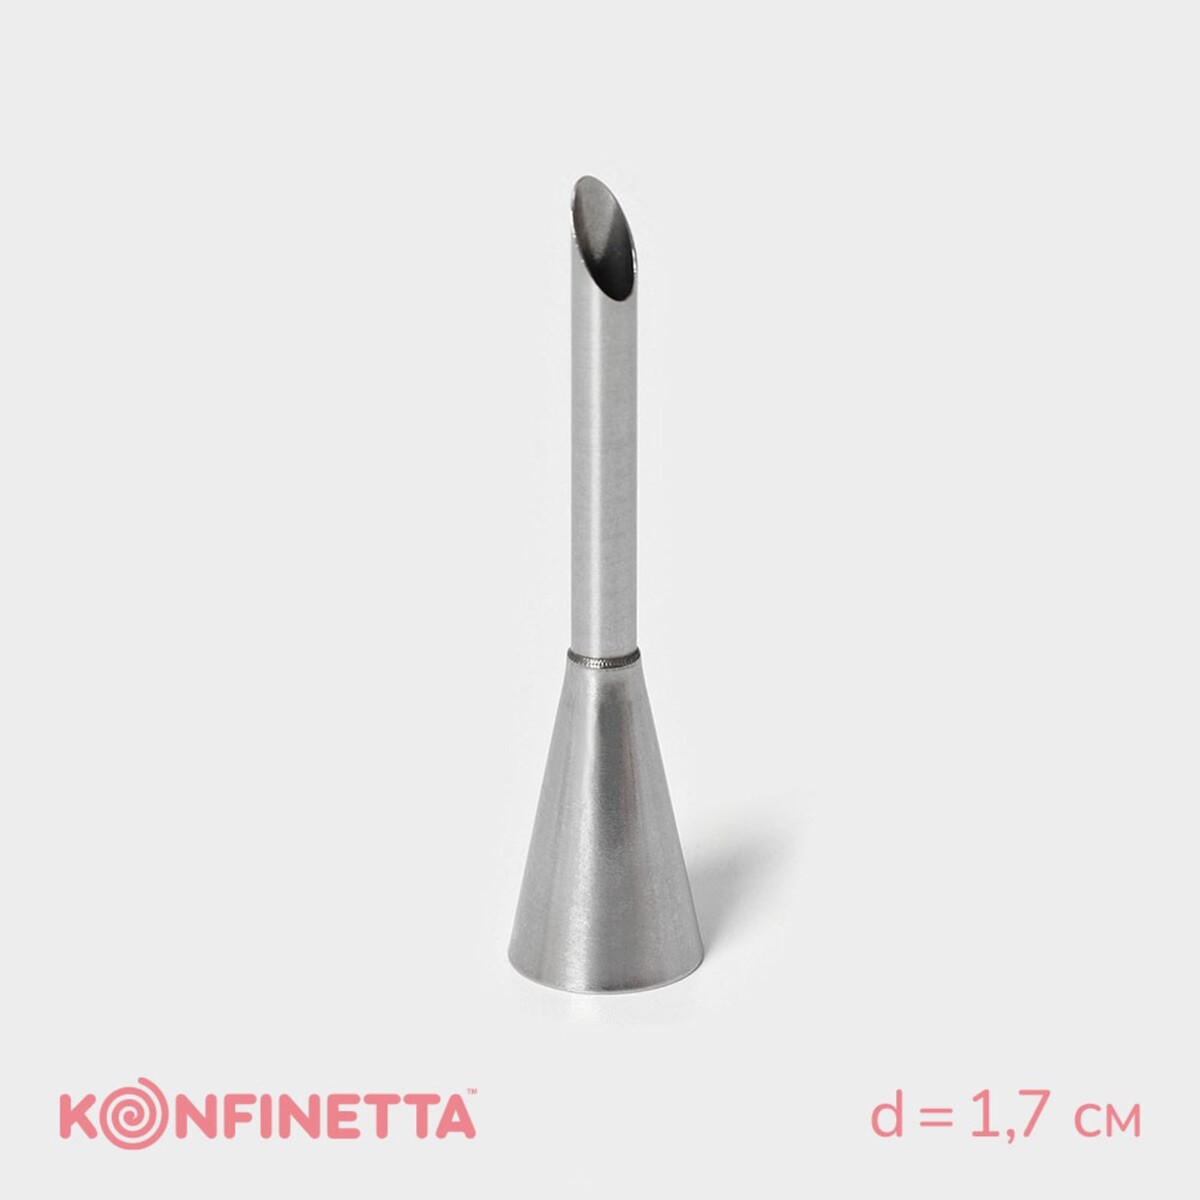 Насадка кондитерская для начинки konfinetta насадка кондитерская konfinetta d 3 см выход 1 7 см нержавеющая сталь